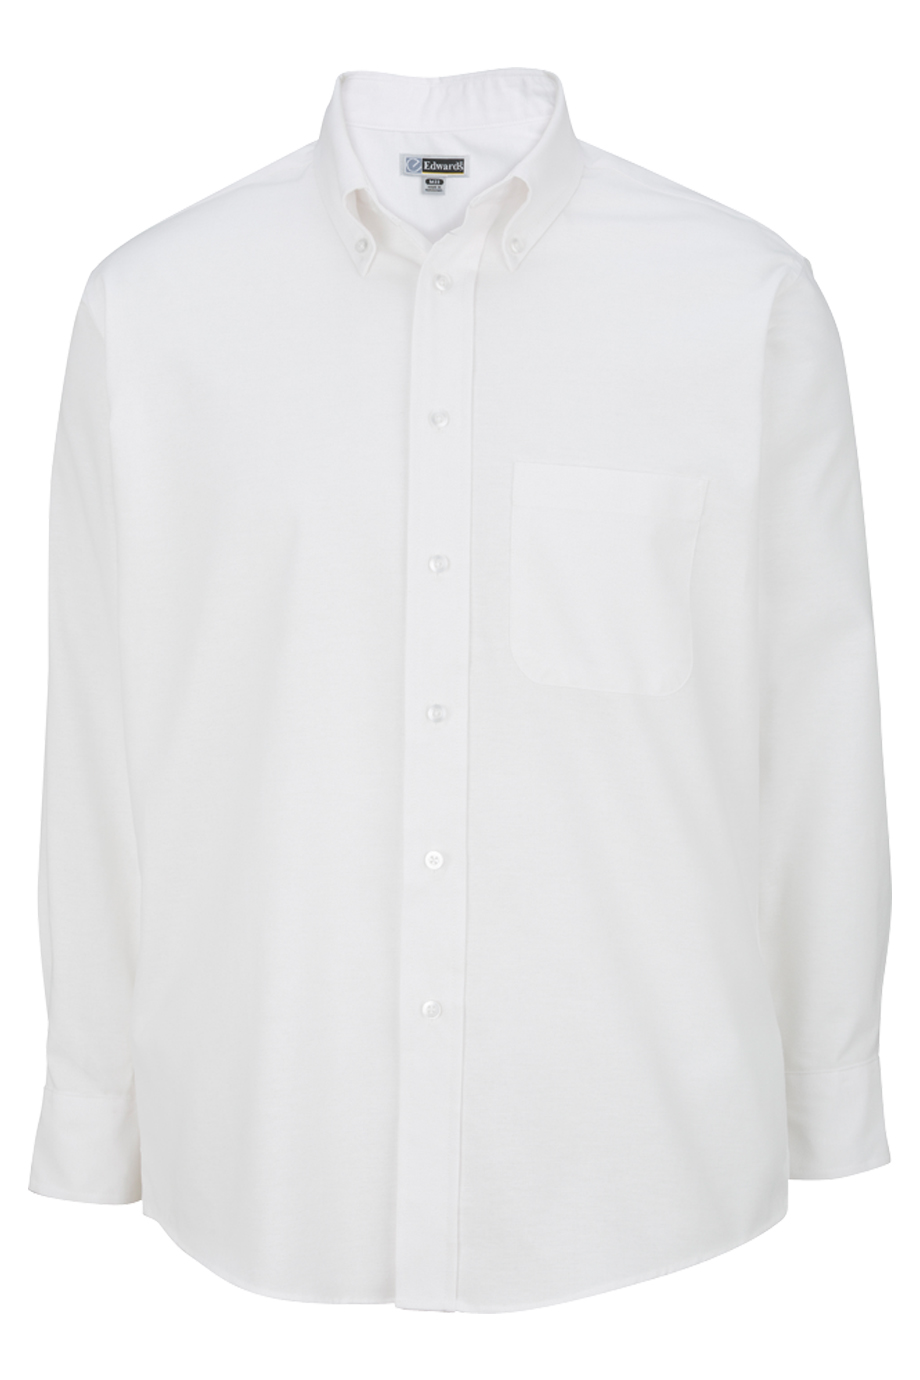 Edwards Mens Long Sleeve Oxford Shirt-Edwards